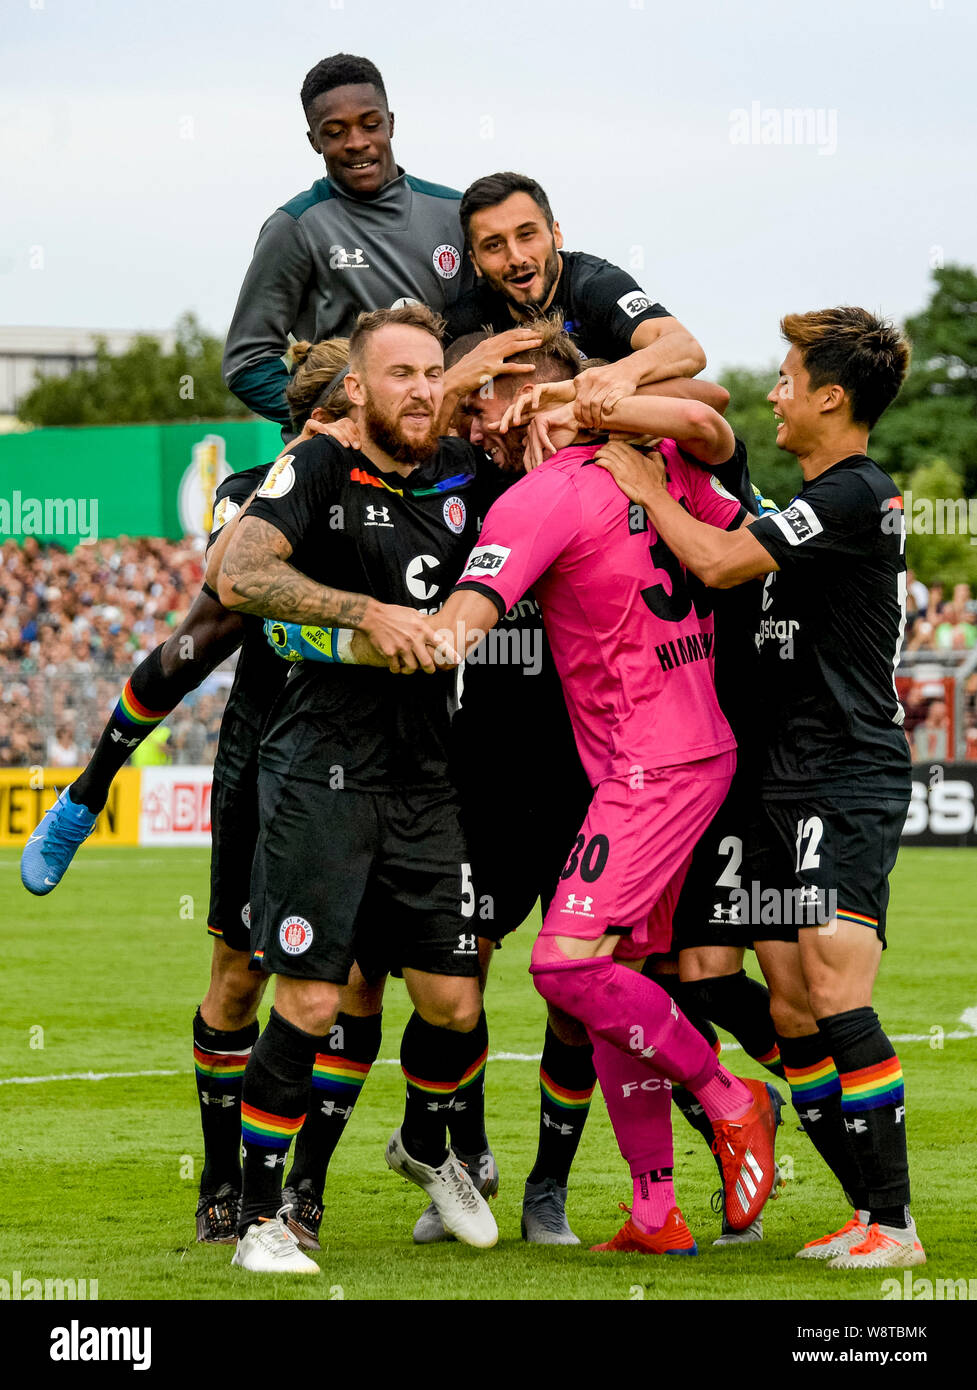 11 agosto 2019, Schleswig-Holstein, Lubecca: Calcio: DFB Cup, VfB Lübeck -  FC St Pauli, 1° round. St Pauli i giocatori di celebrare l'obiettivo di  2:3. Foto: Axel Heimken/dpa - NOTA IMPORTANTE: In